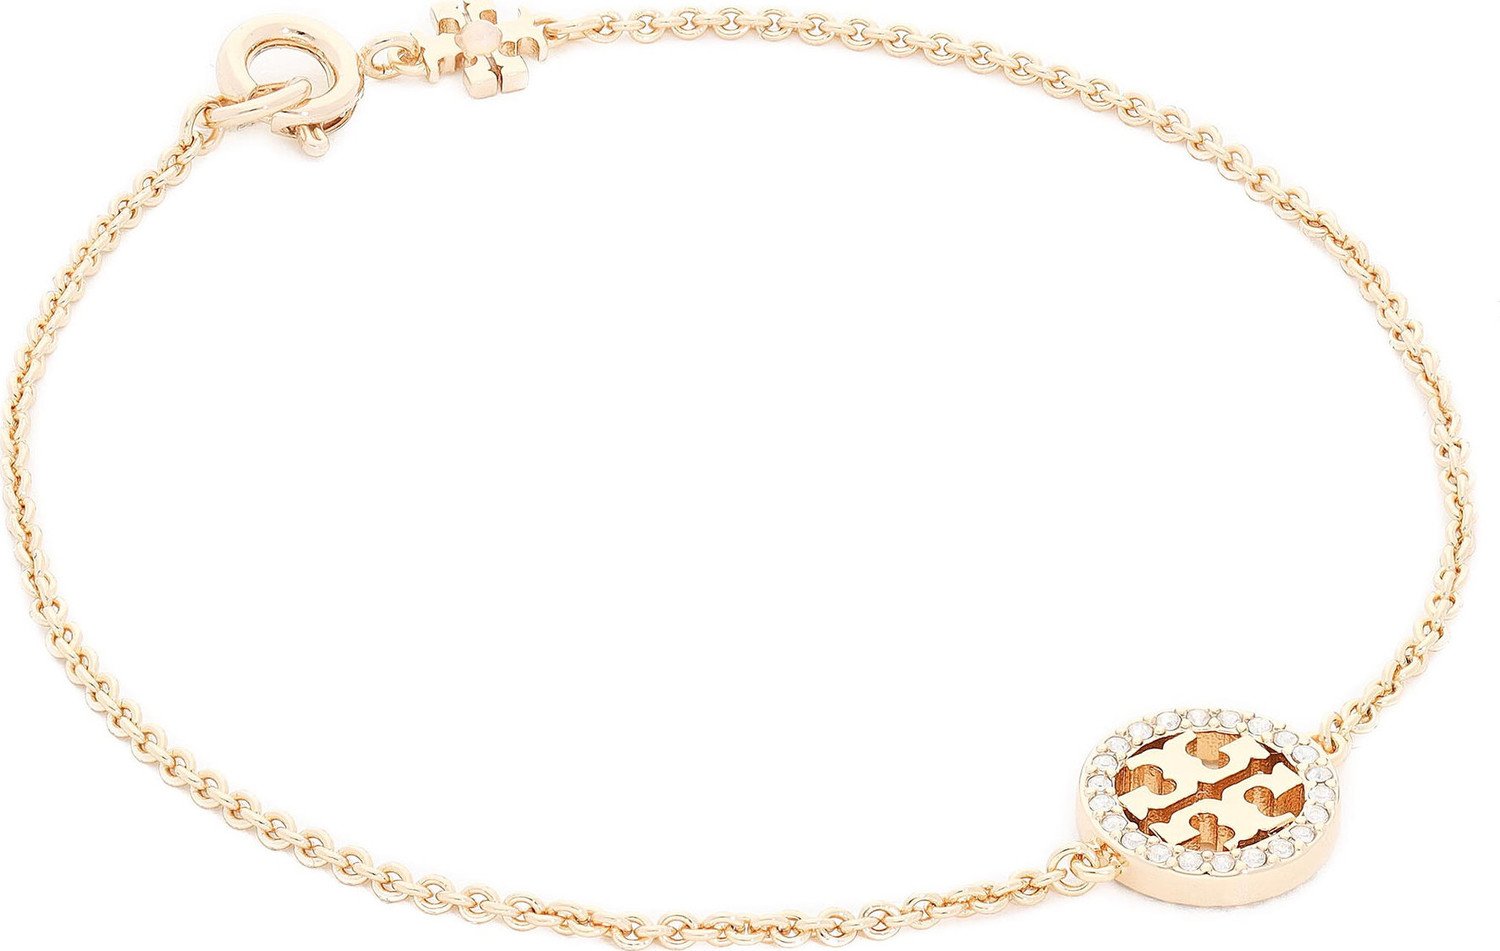 Náramek Tory Burch Miller Pave Chain Bracelet Tory 80997 Gold/Crystal 783